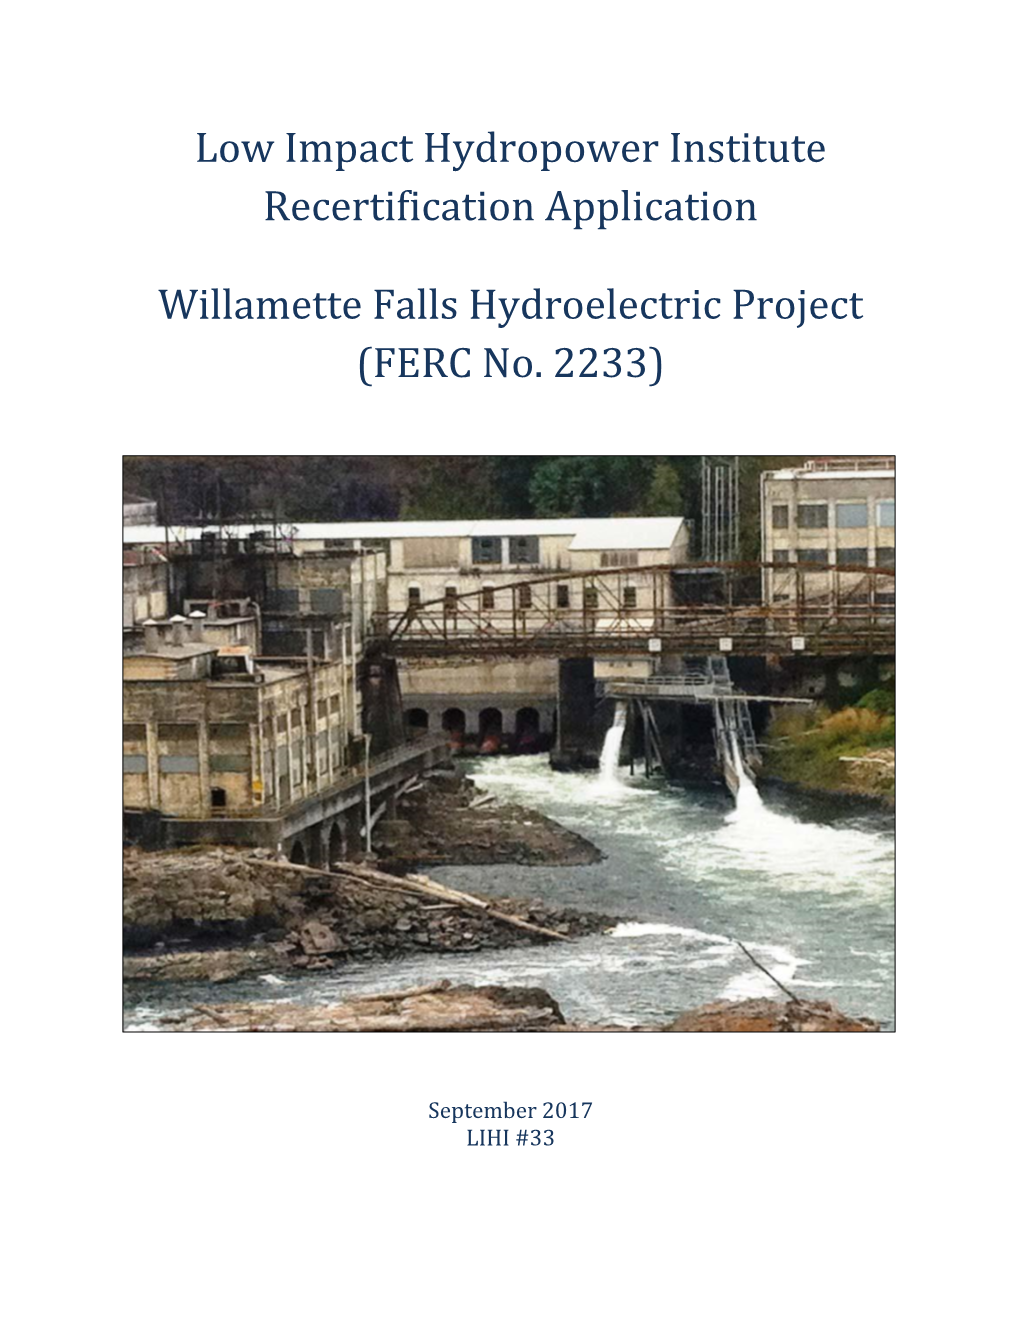 Willamette Falls Recertification Application